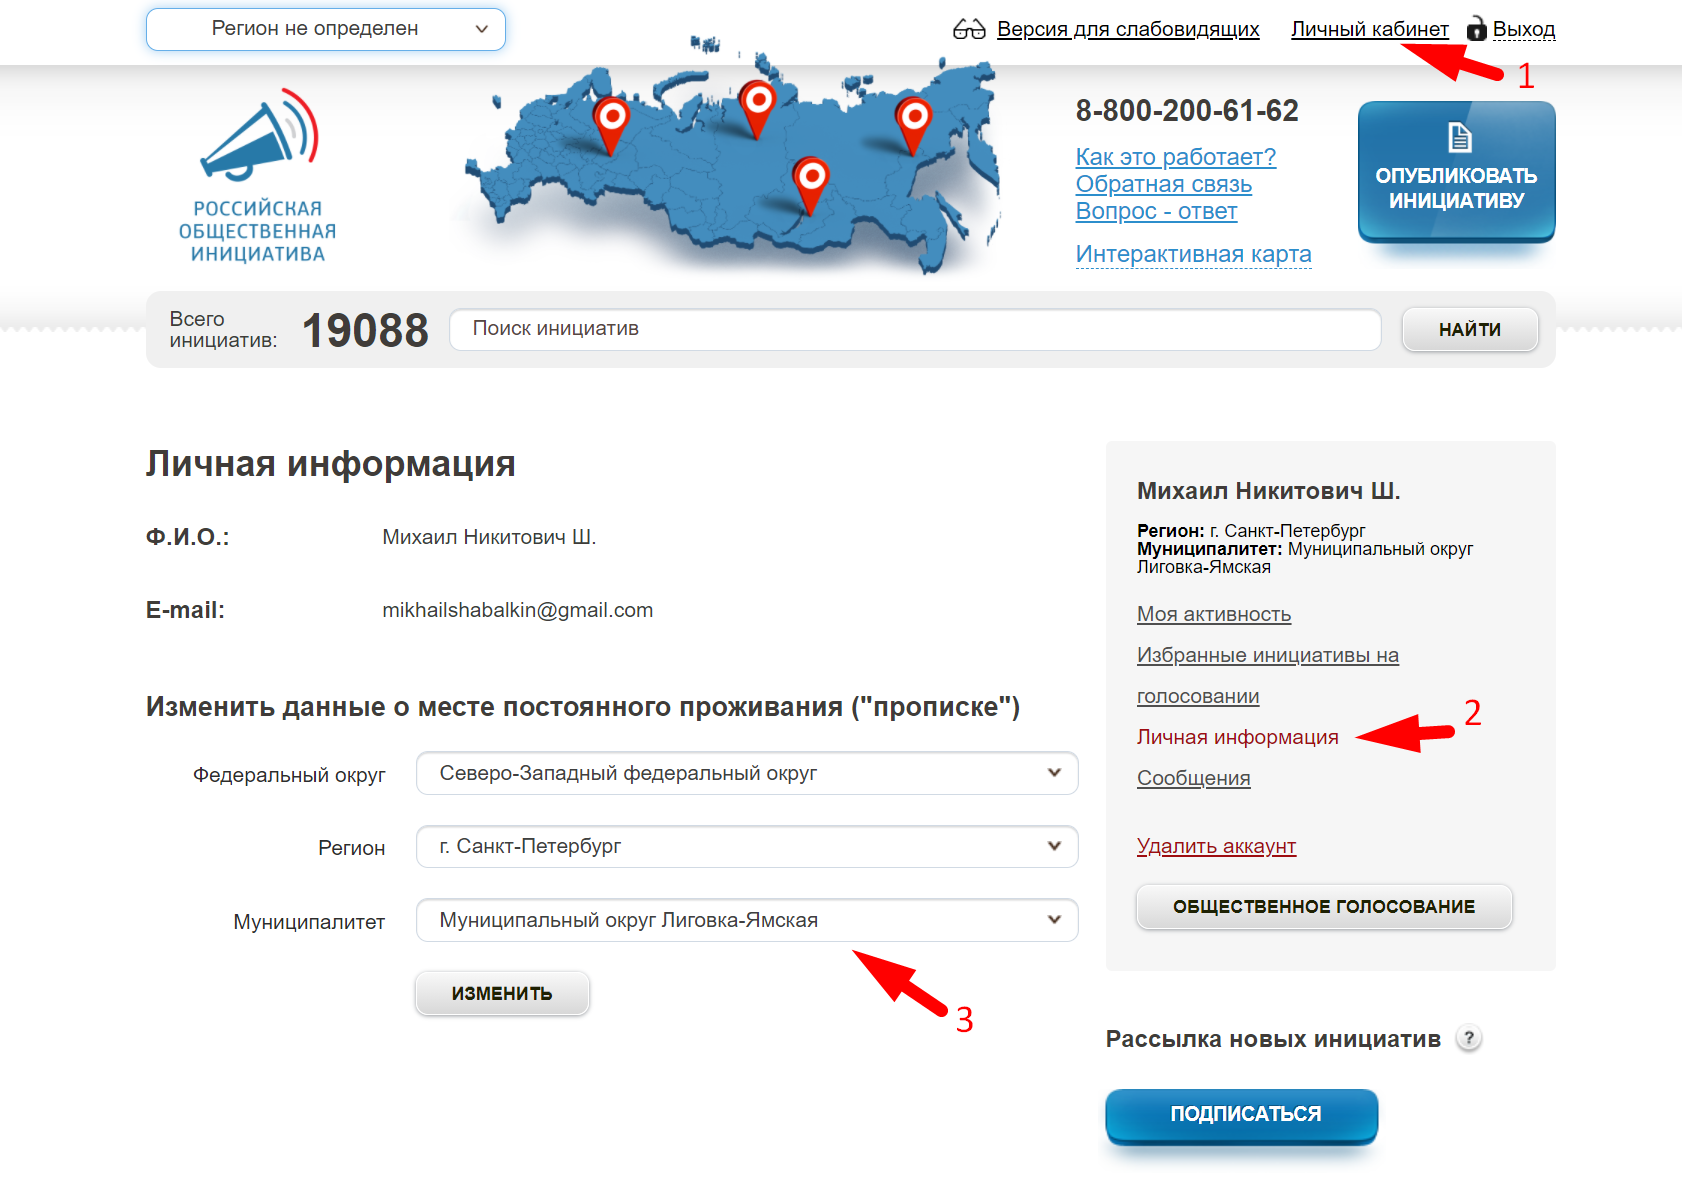 Российская общественная инициатива на госуслугах как найти. Муниципалитет Лиговка-Ямская карта-схема.